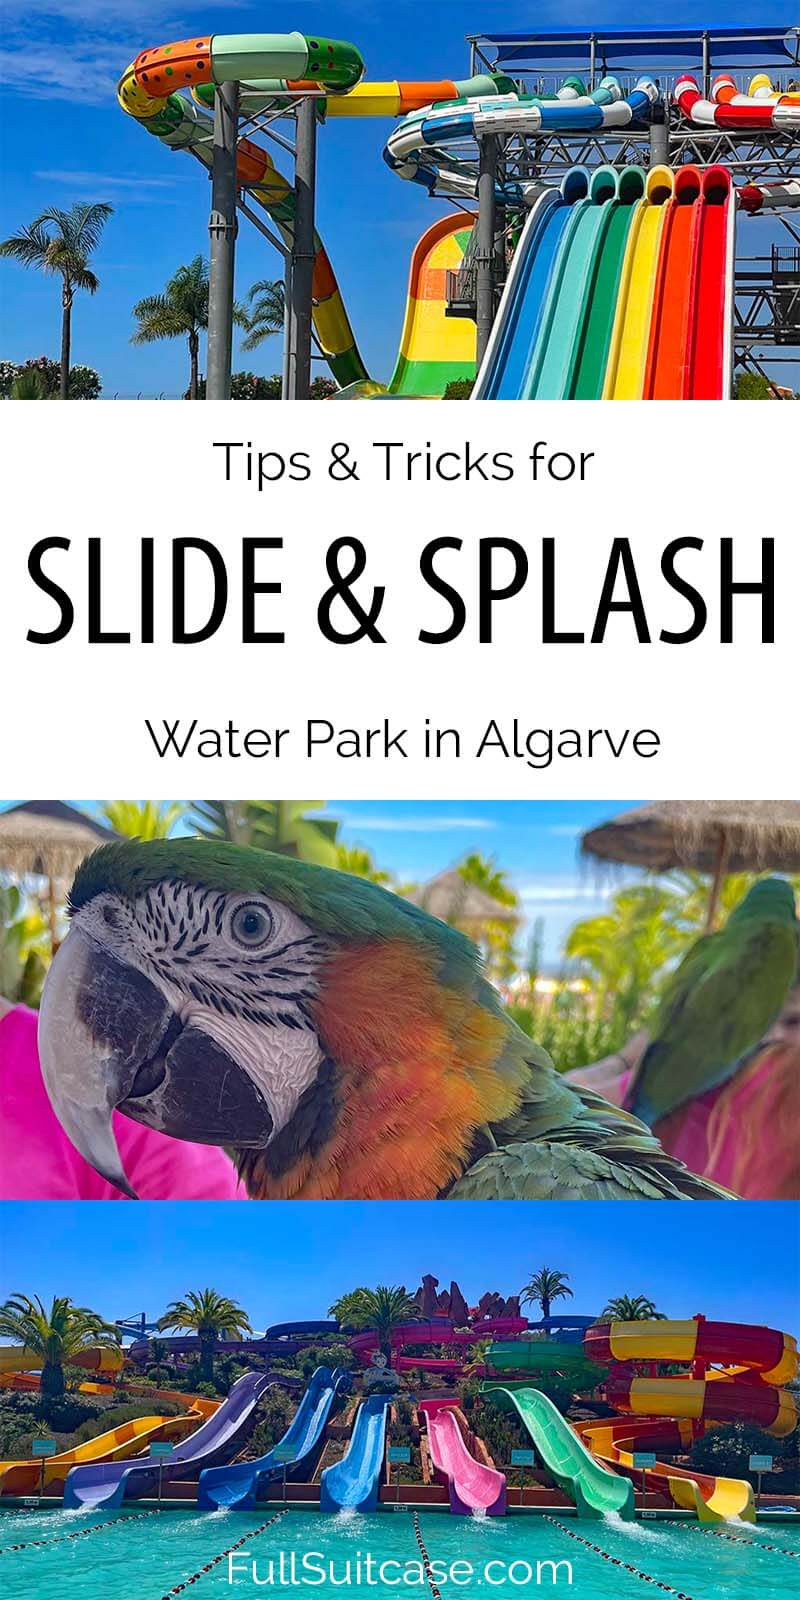 Slide & Splash Algarve - info and tips for first visit